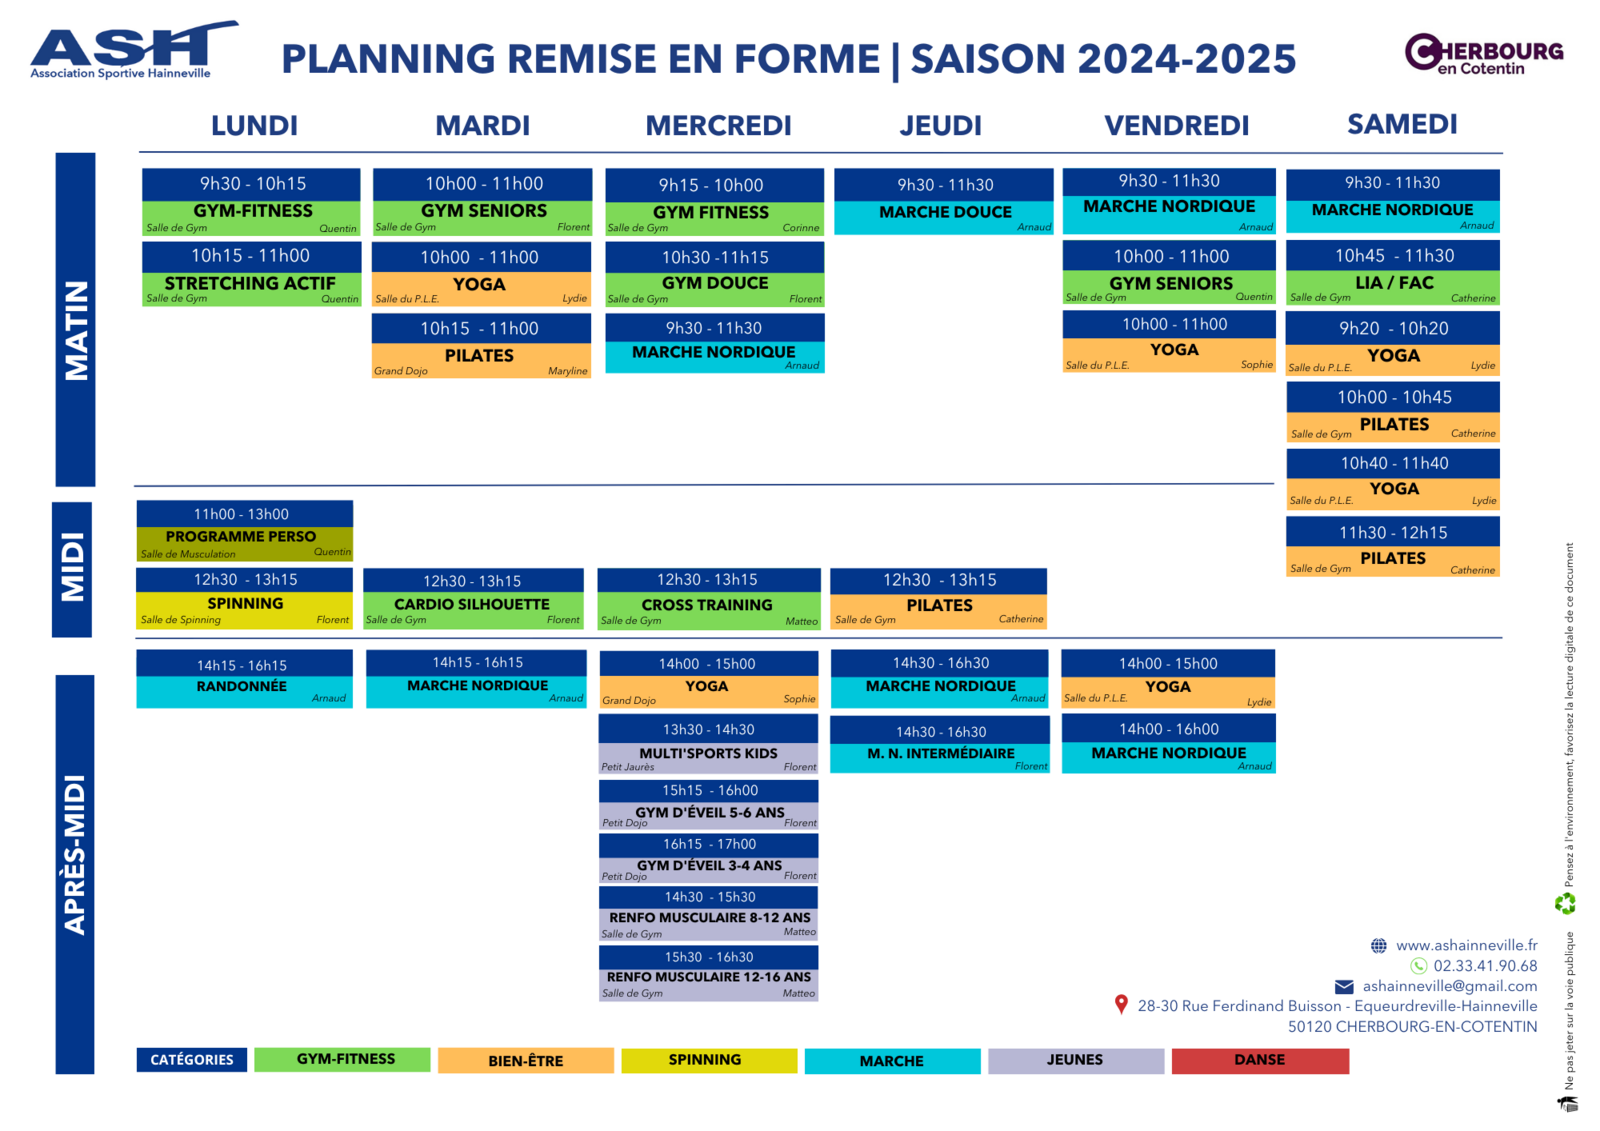 PLANNING 2024-2025